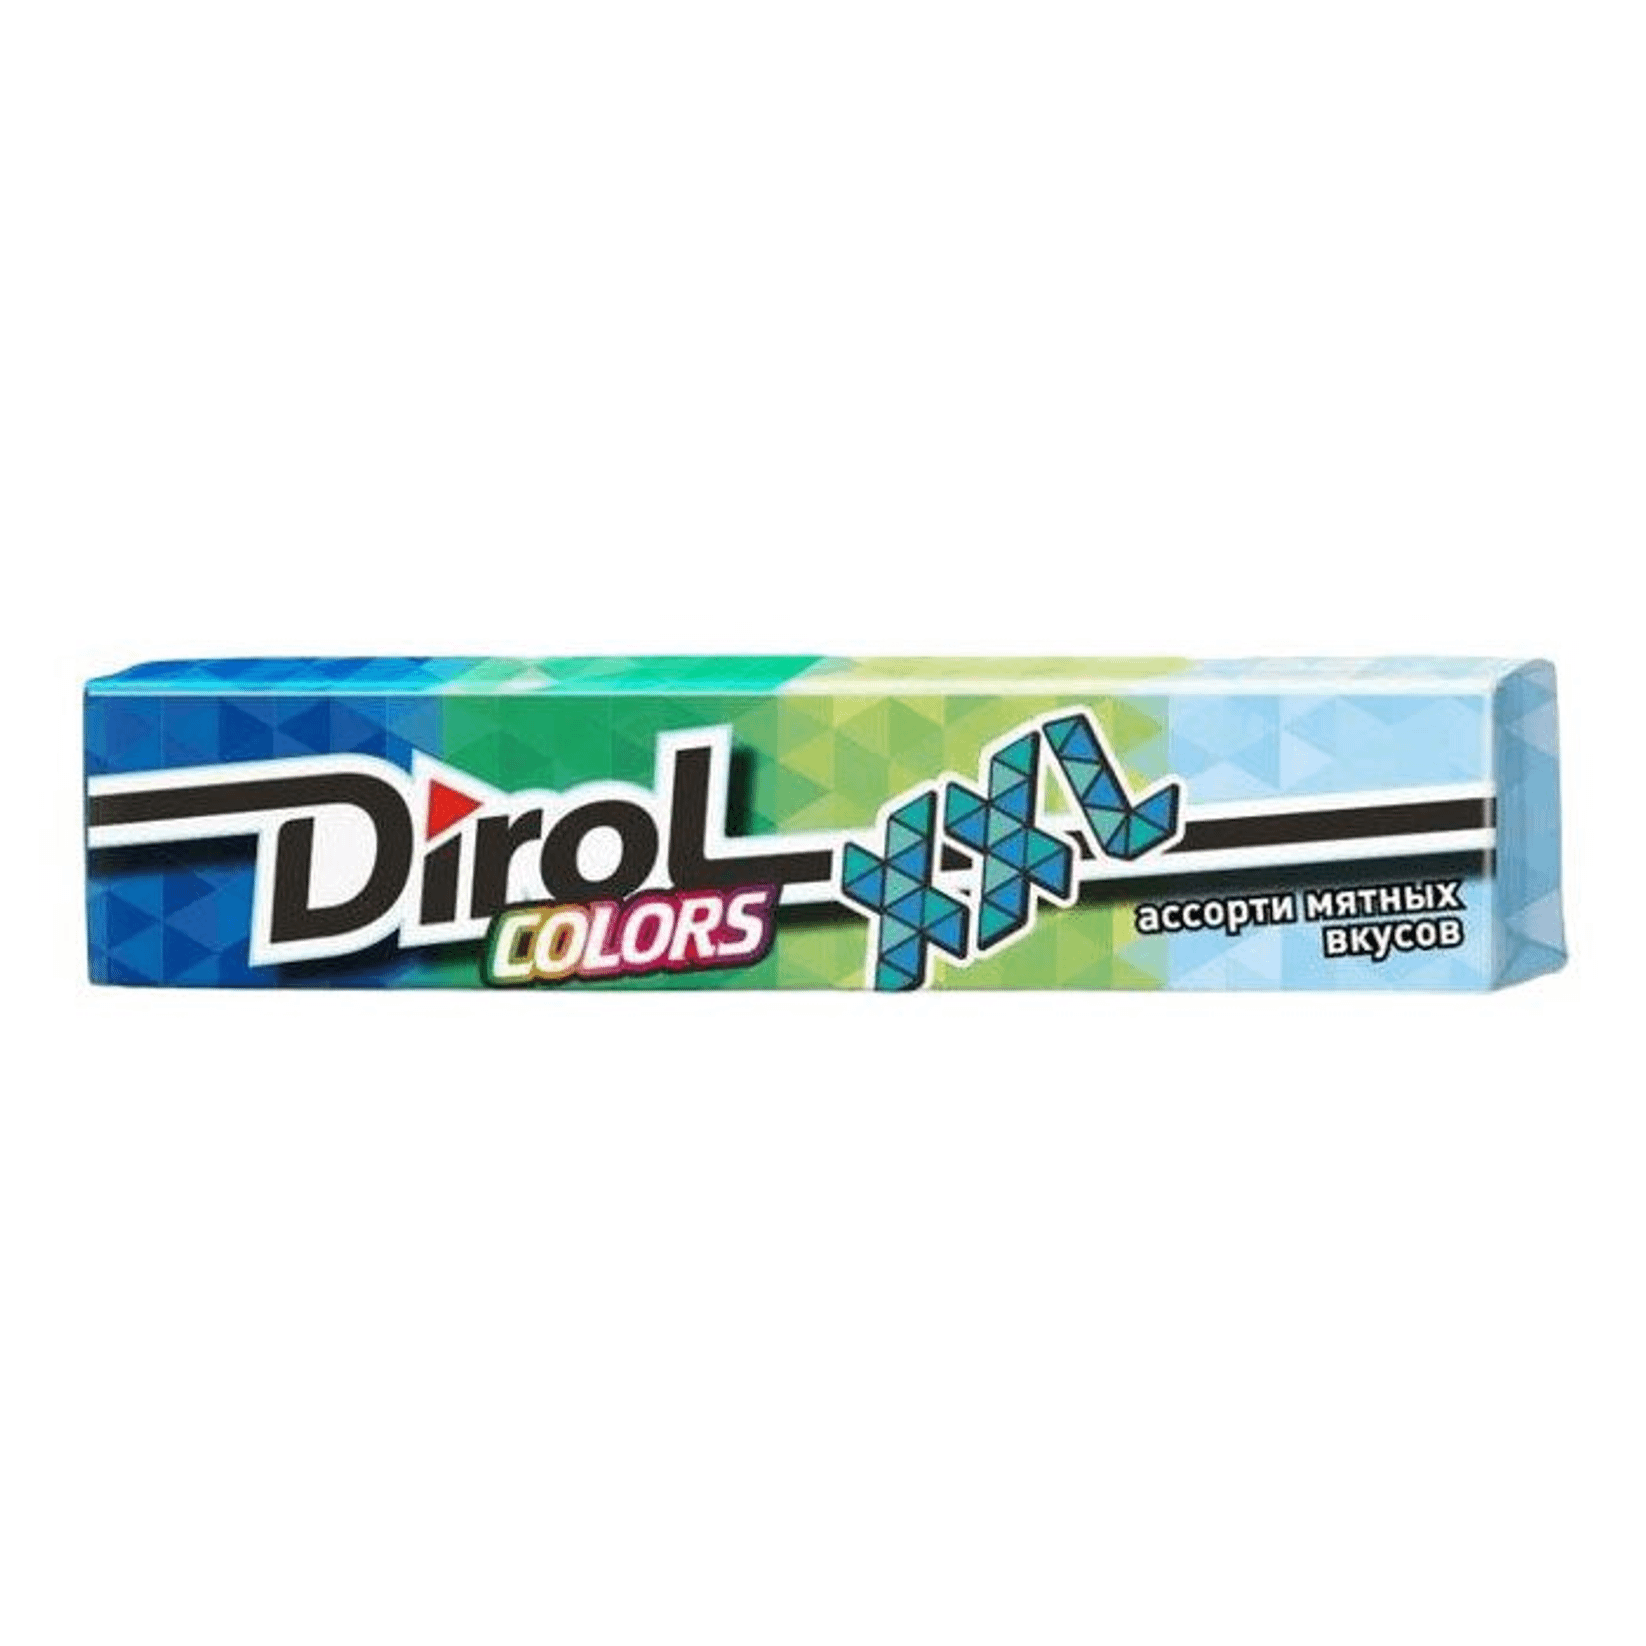 Купить жевательная резинка Dirol Colors XXL ассорти мятных вкусов 14 шт 19 г, цены на Мегамаркет | Артикул: 100063096357